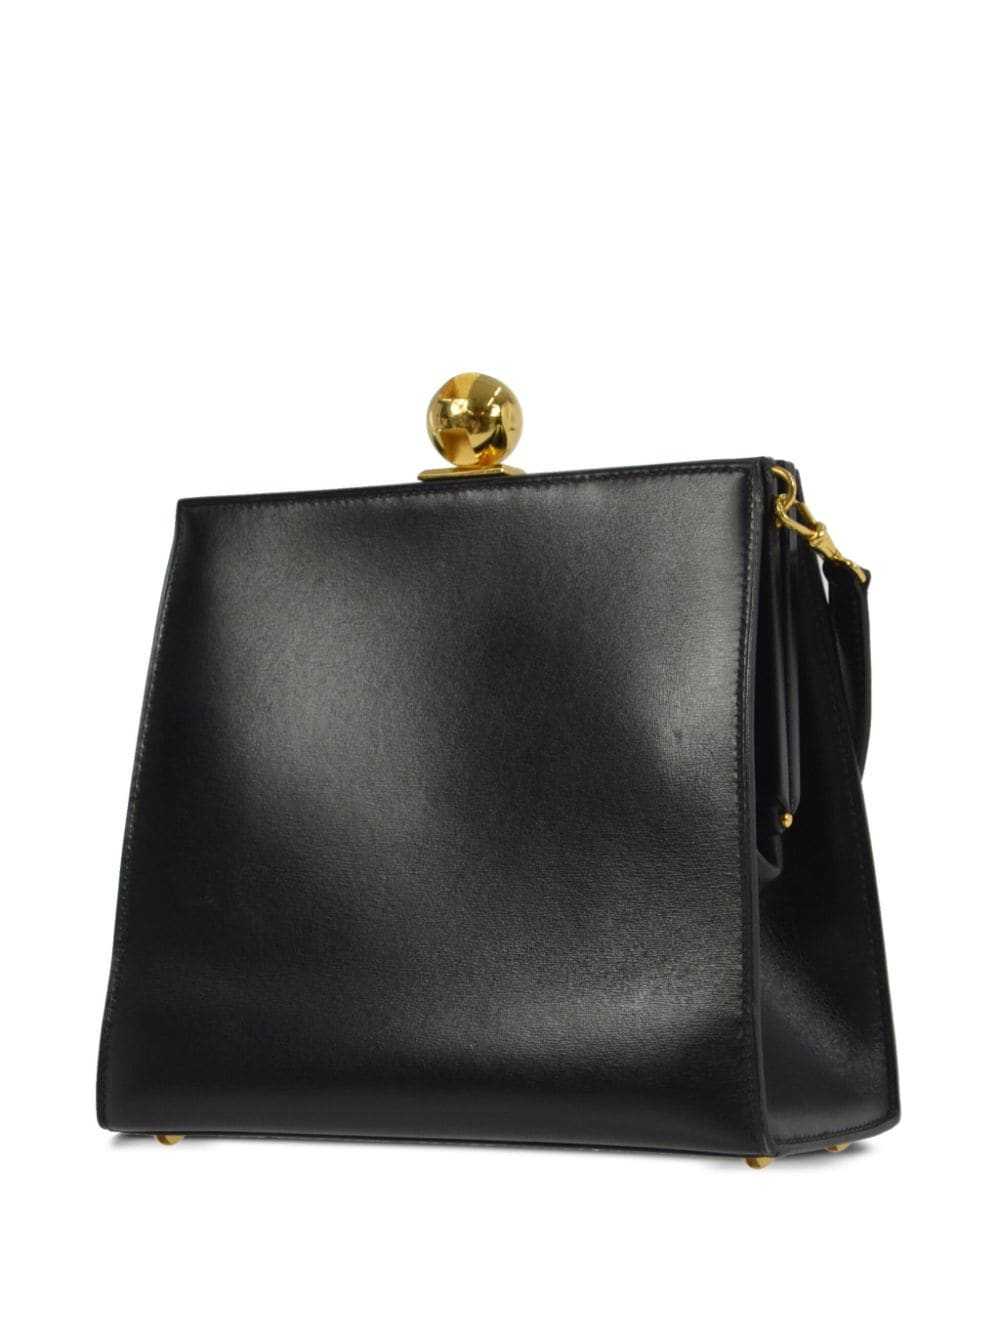 Hermès Pre-Owned 1999 leather shoulder bag - Black - image 2